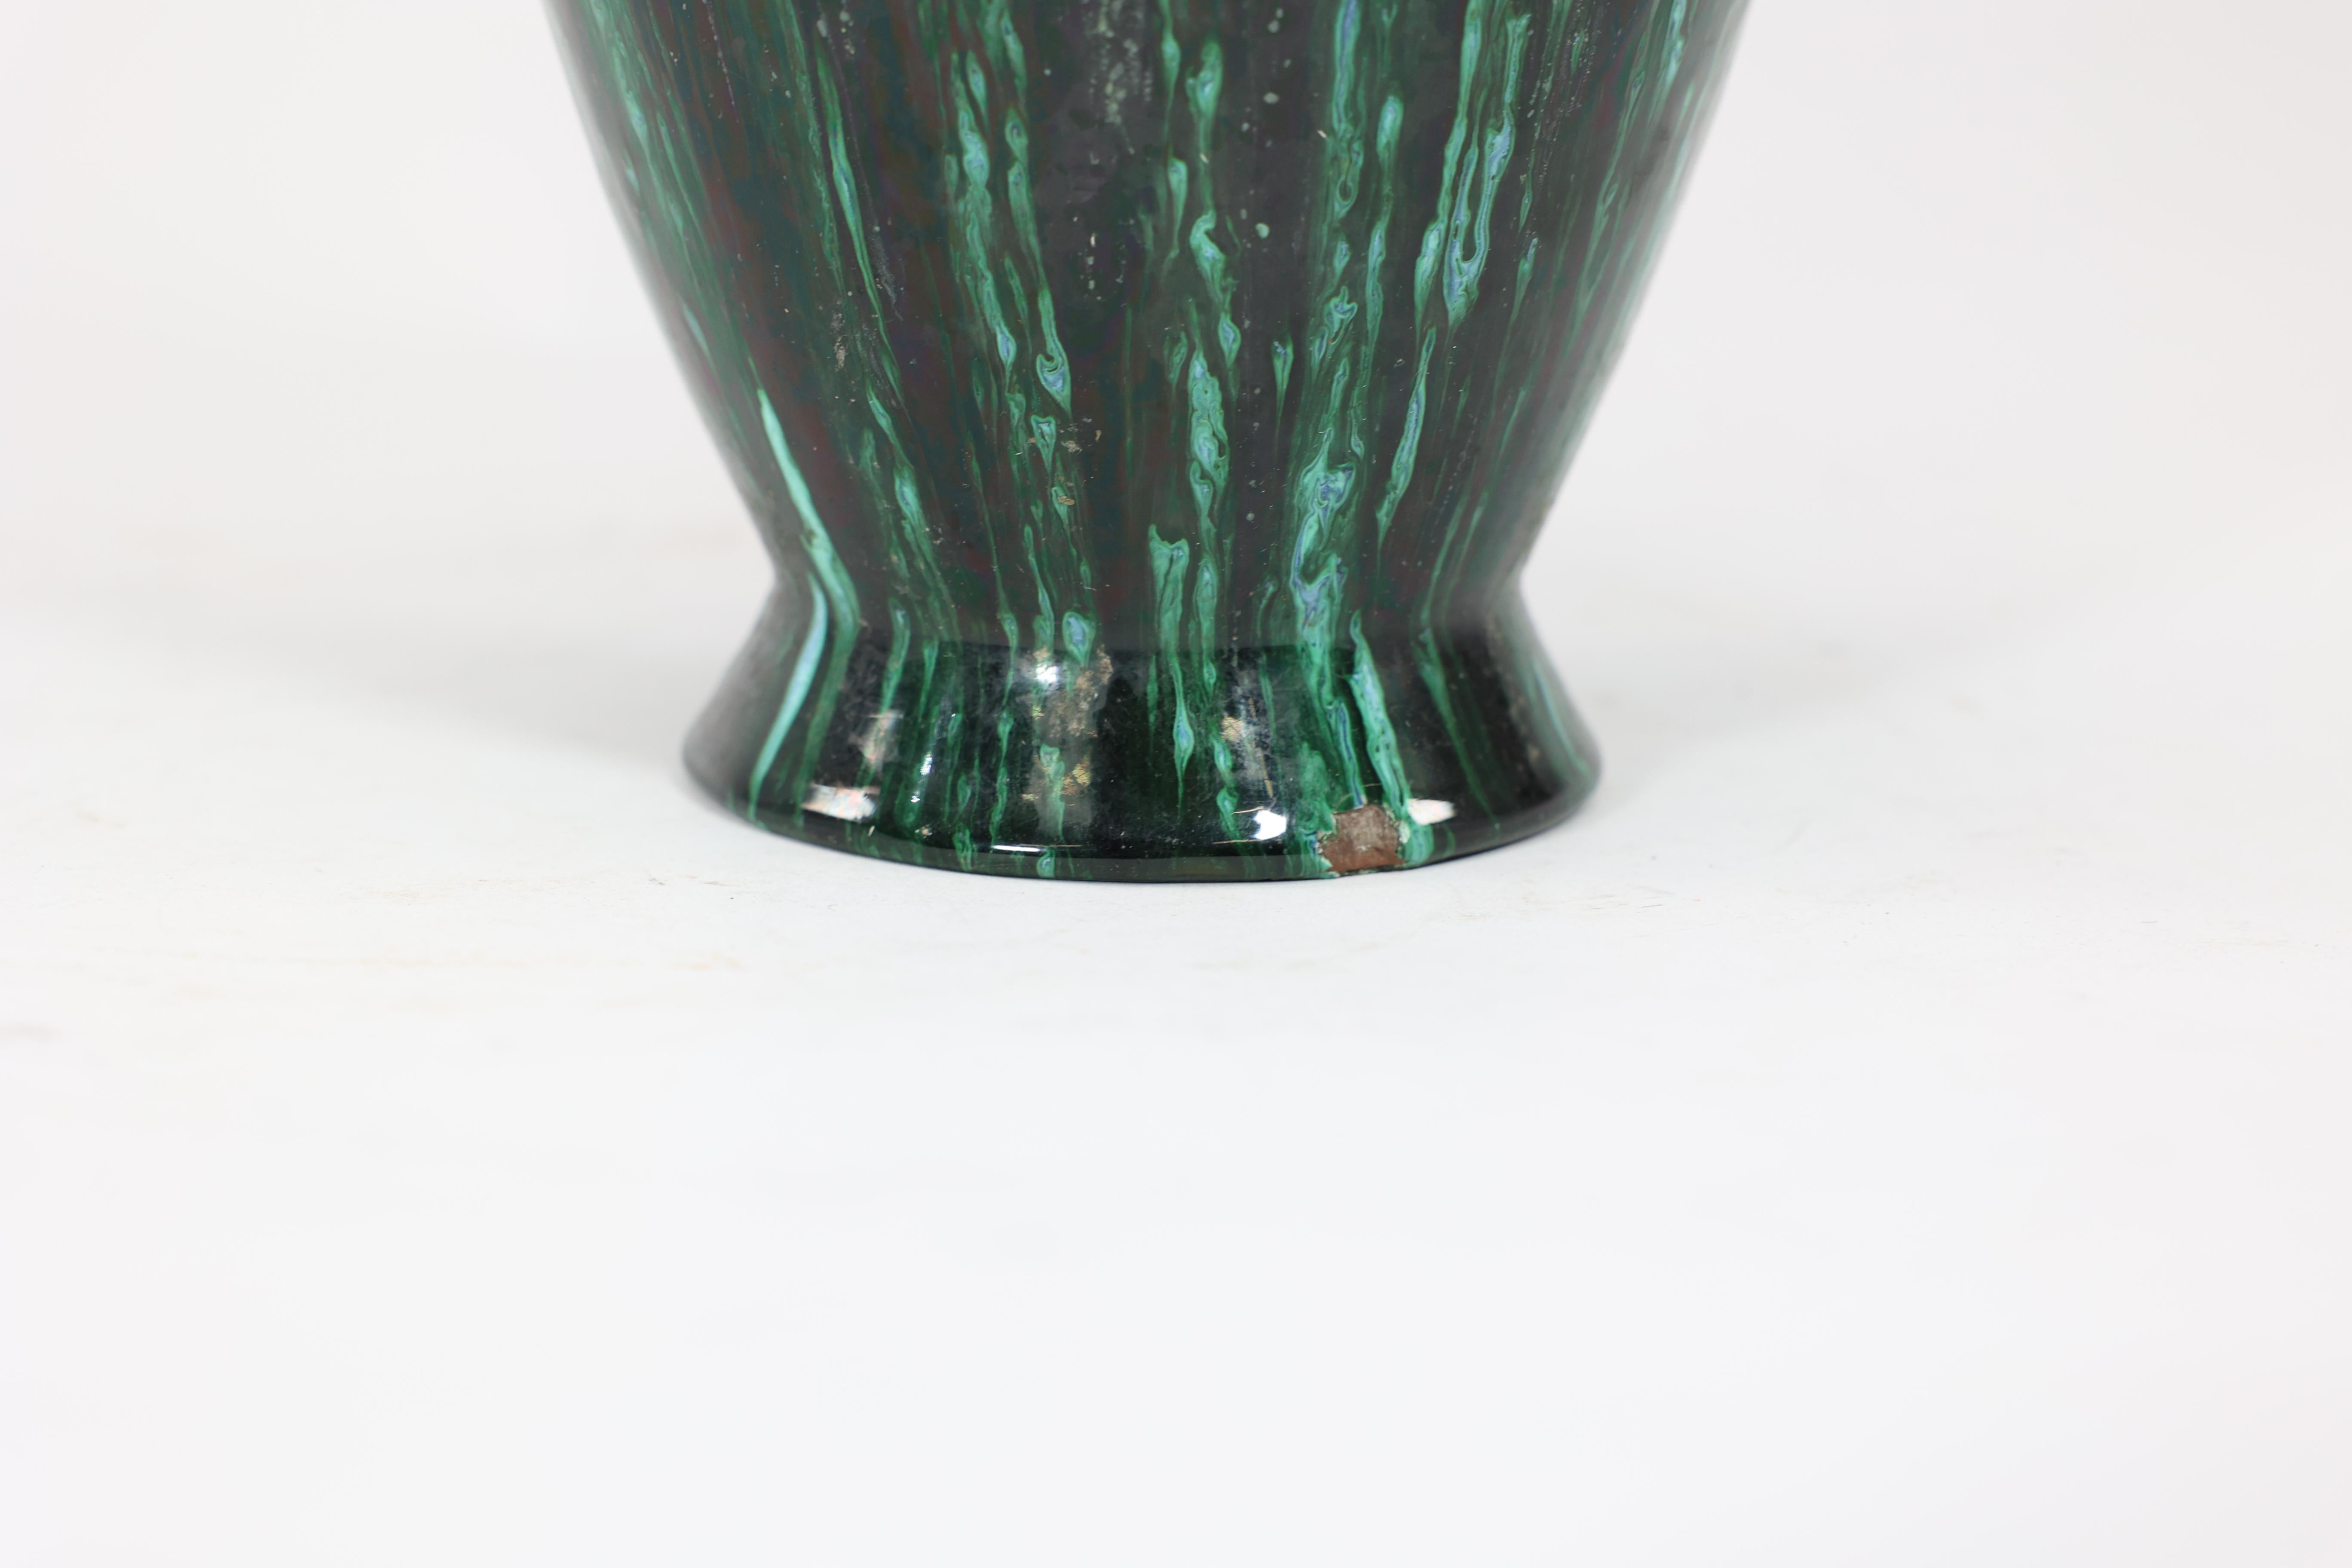 Dr C Dresser for Linthorpe A large vase with raining green and subtle blue glaze For Sale 2